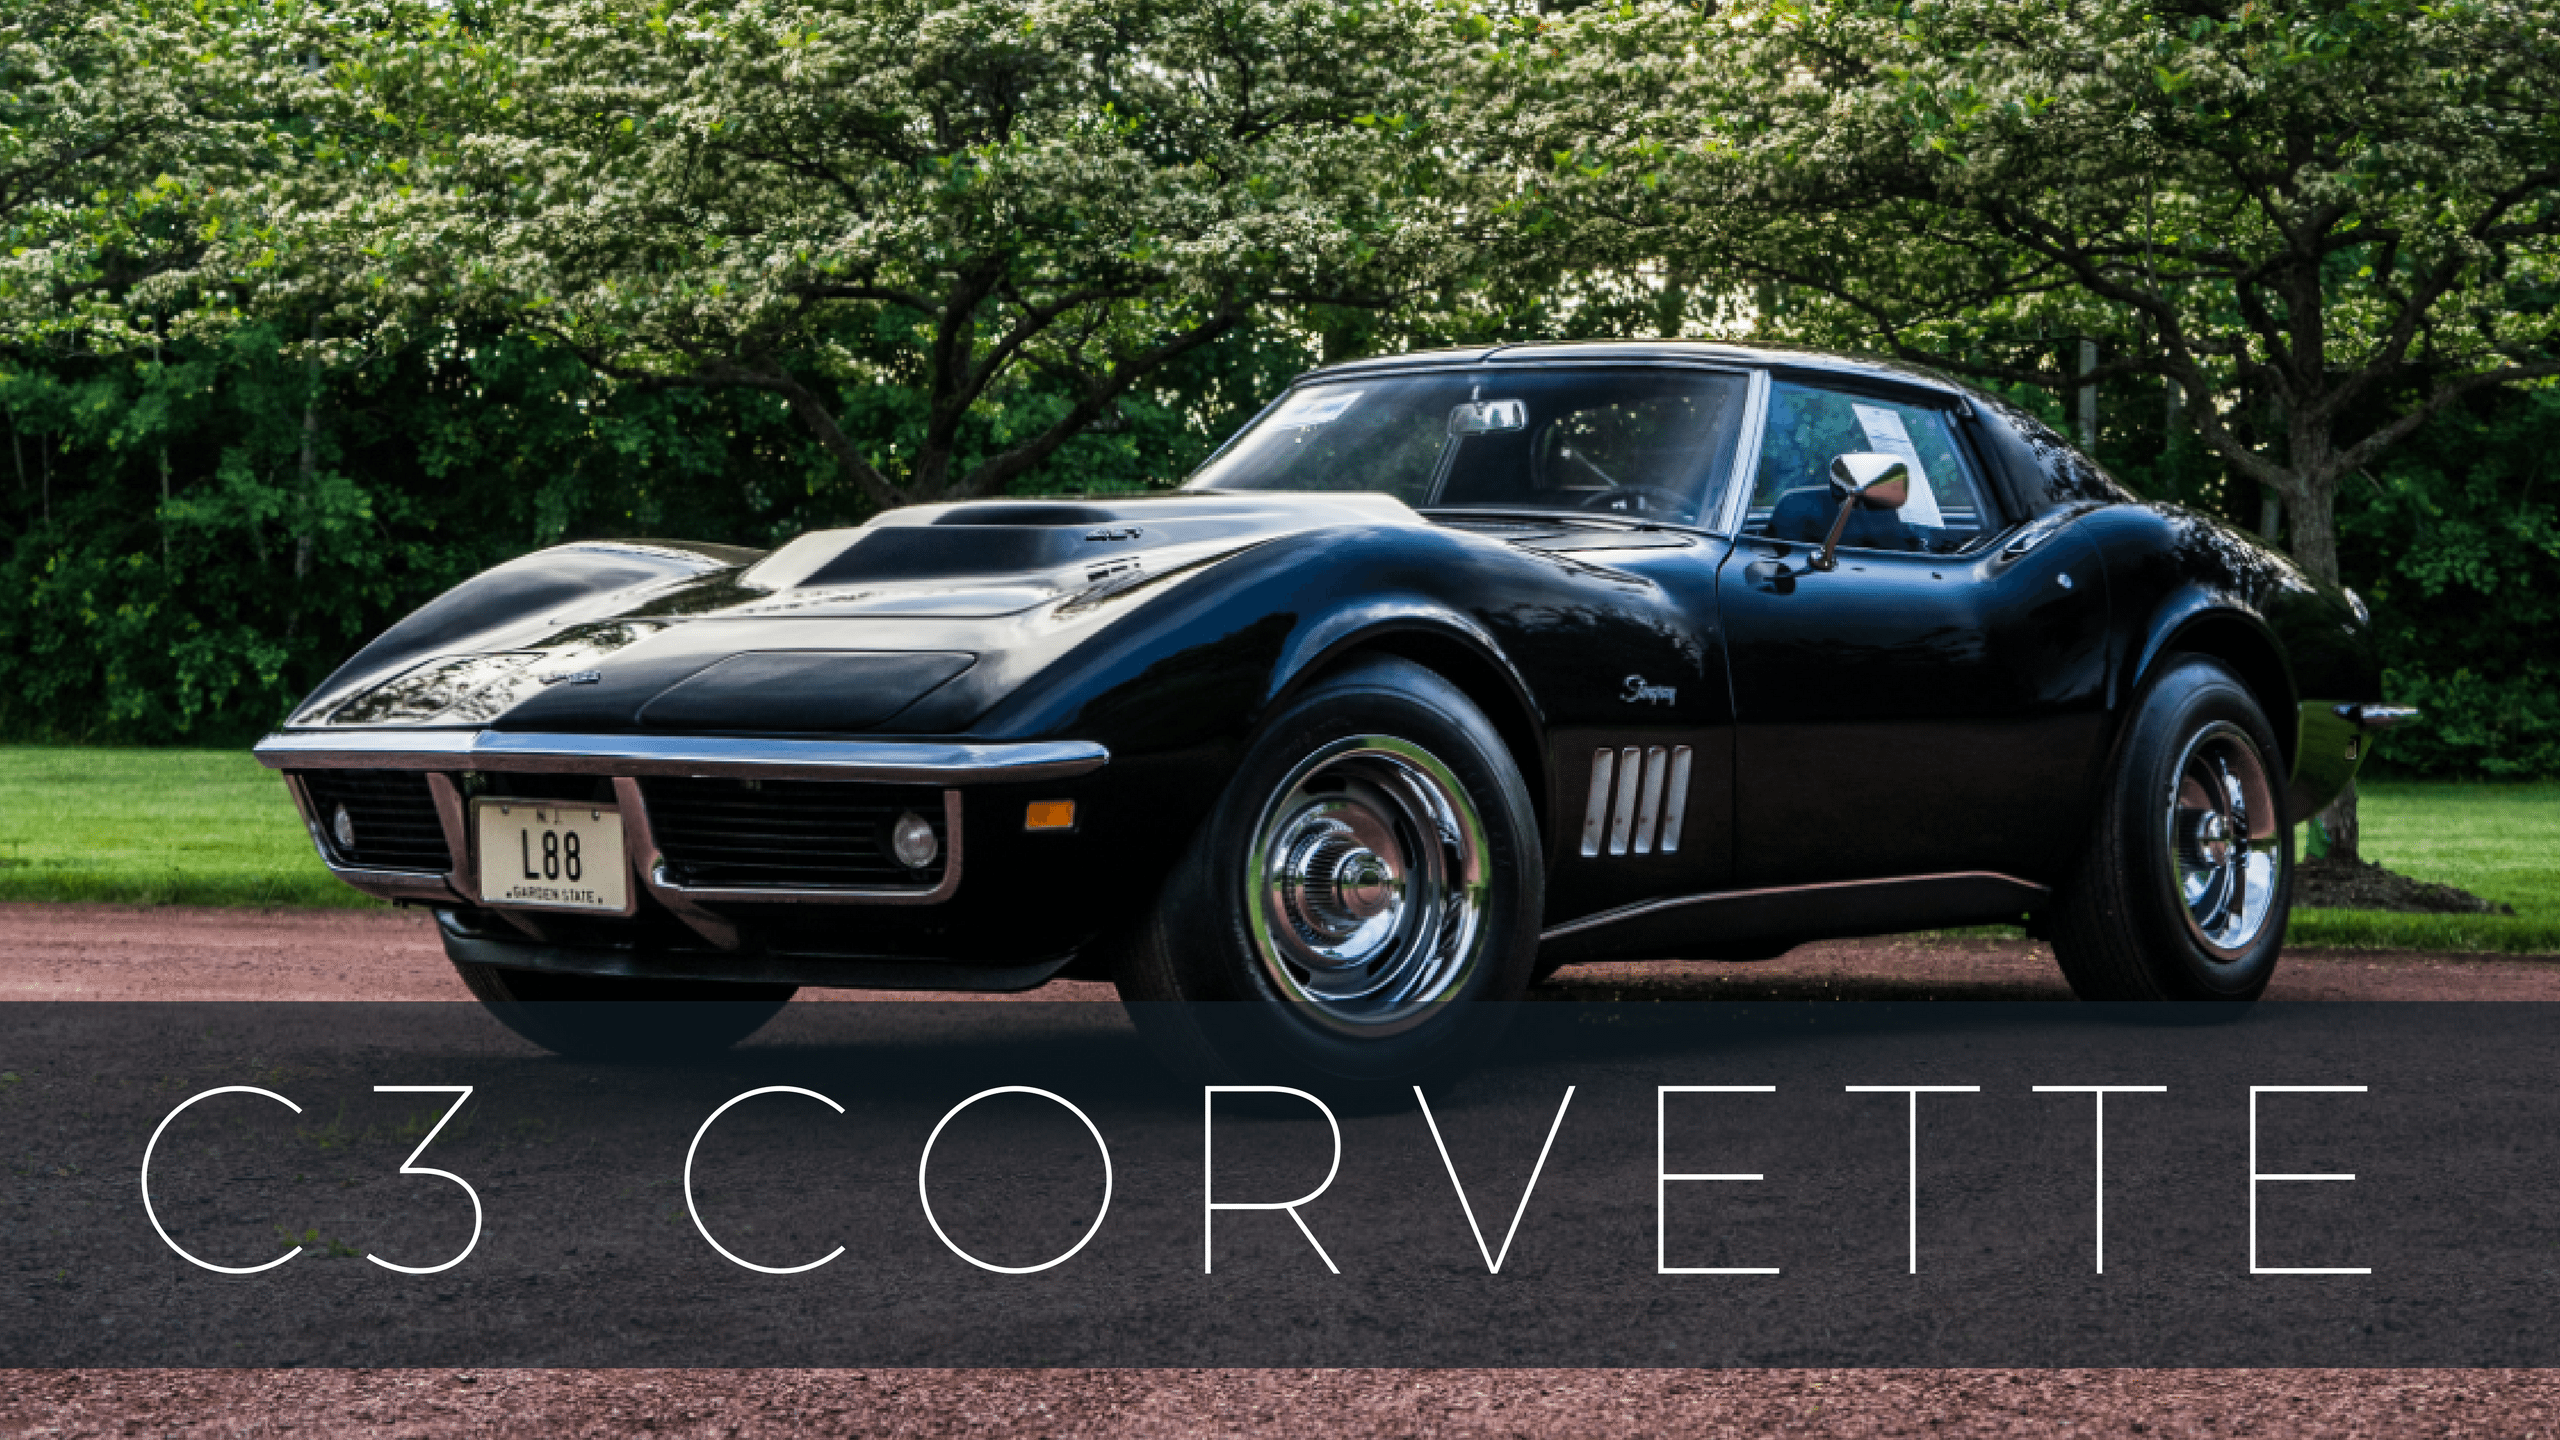 Corvette Generation Logo - Corvette Models List of Chevrolet Corvette Models & Years